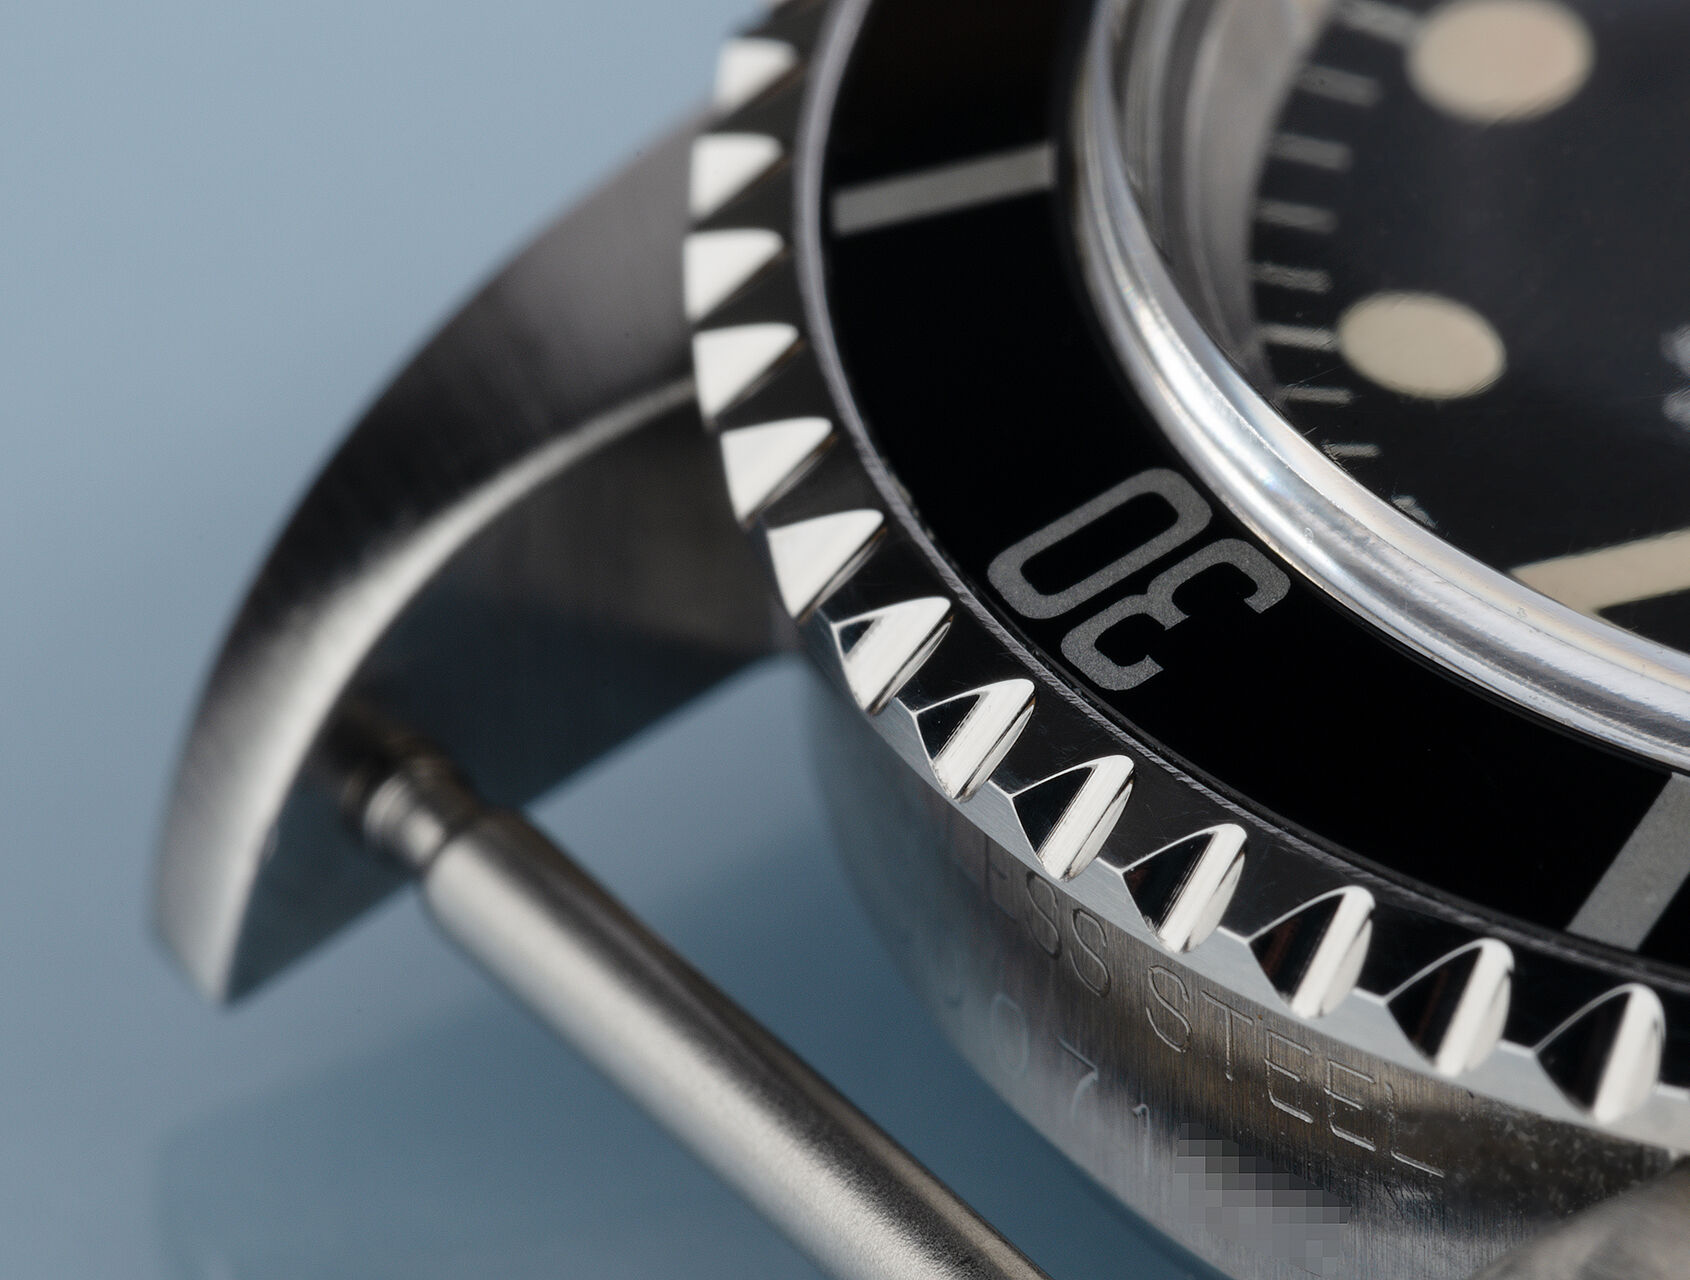 ref 5512 | Rare Chronometer '5512' | Rolex Submariner 